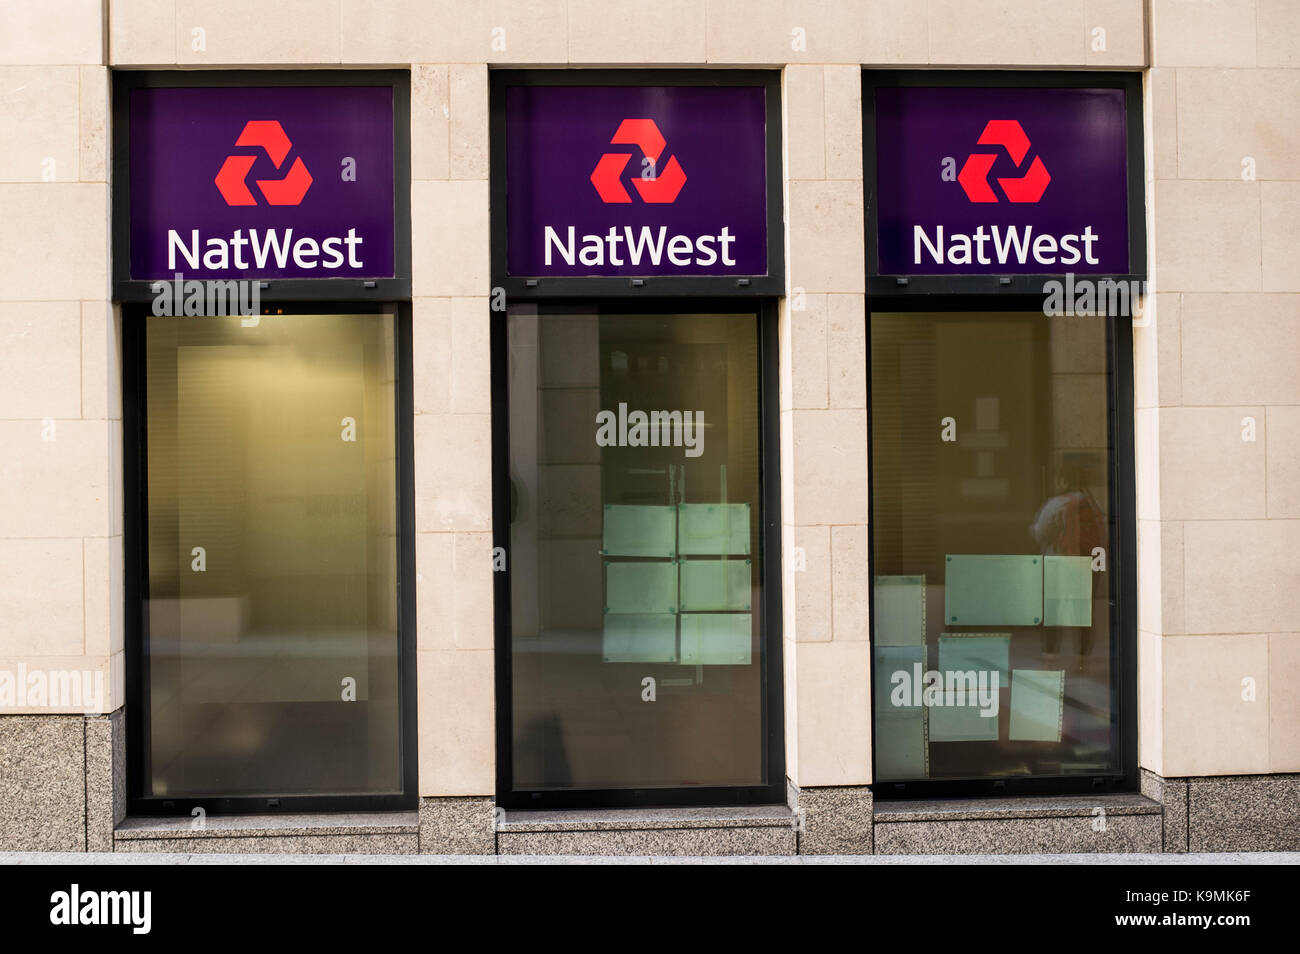 National Westminster Bank, savent comme natwest est un grand Royaume-Uni basée détail banque et fait partie du groupe Royal Bank of Scotland Banque D'Images